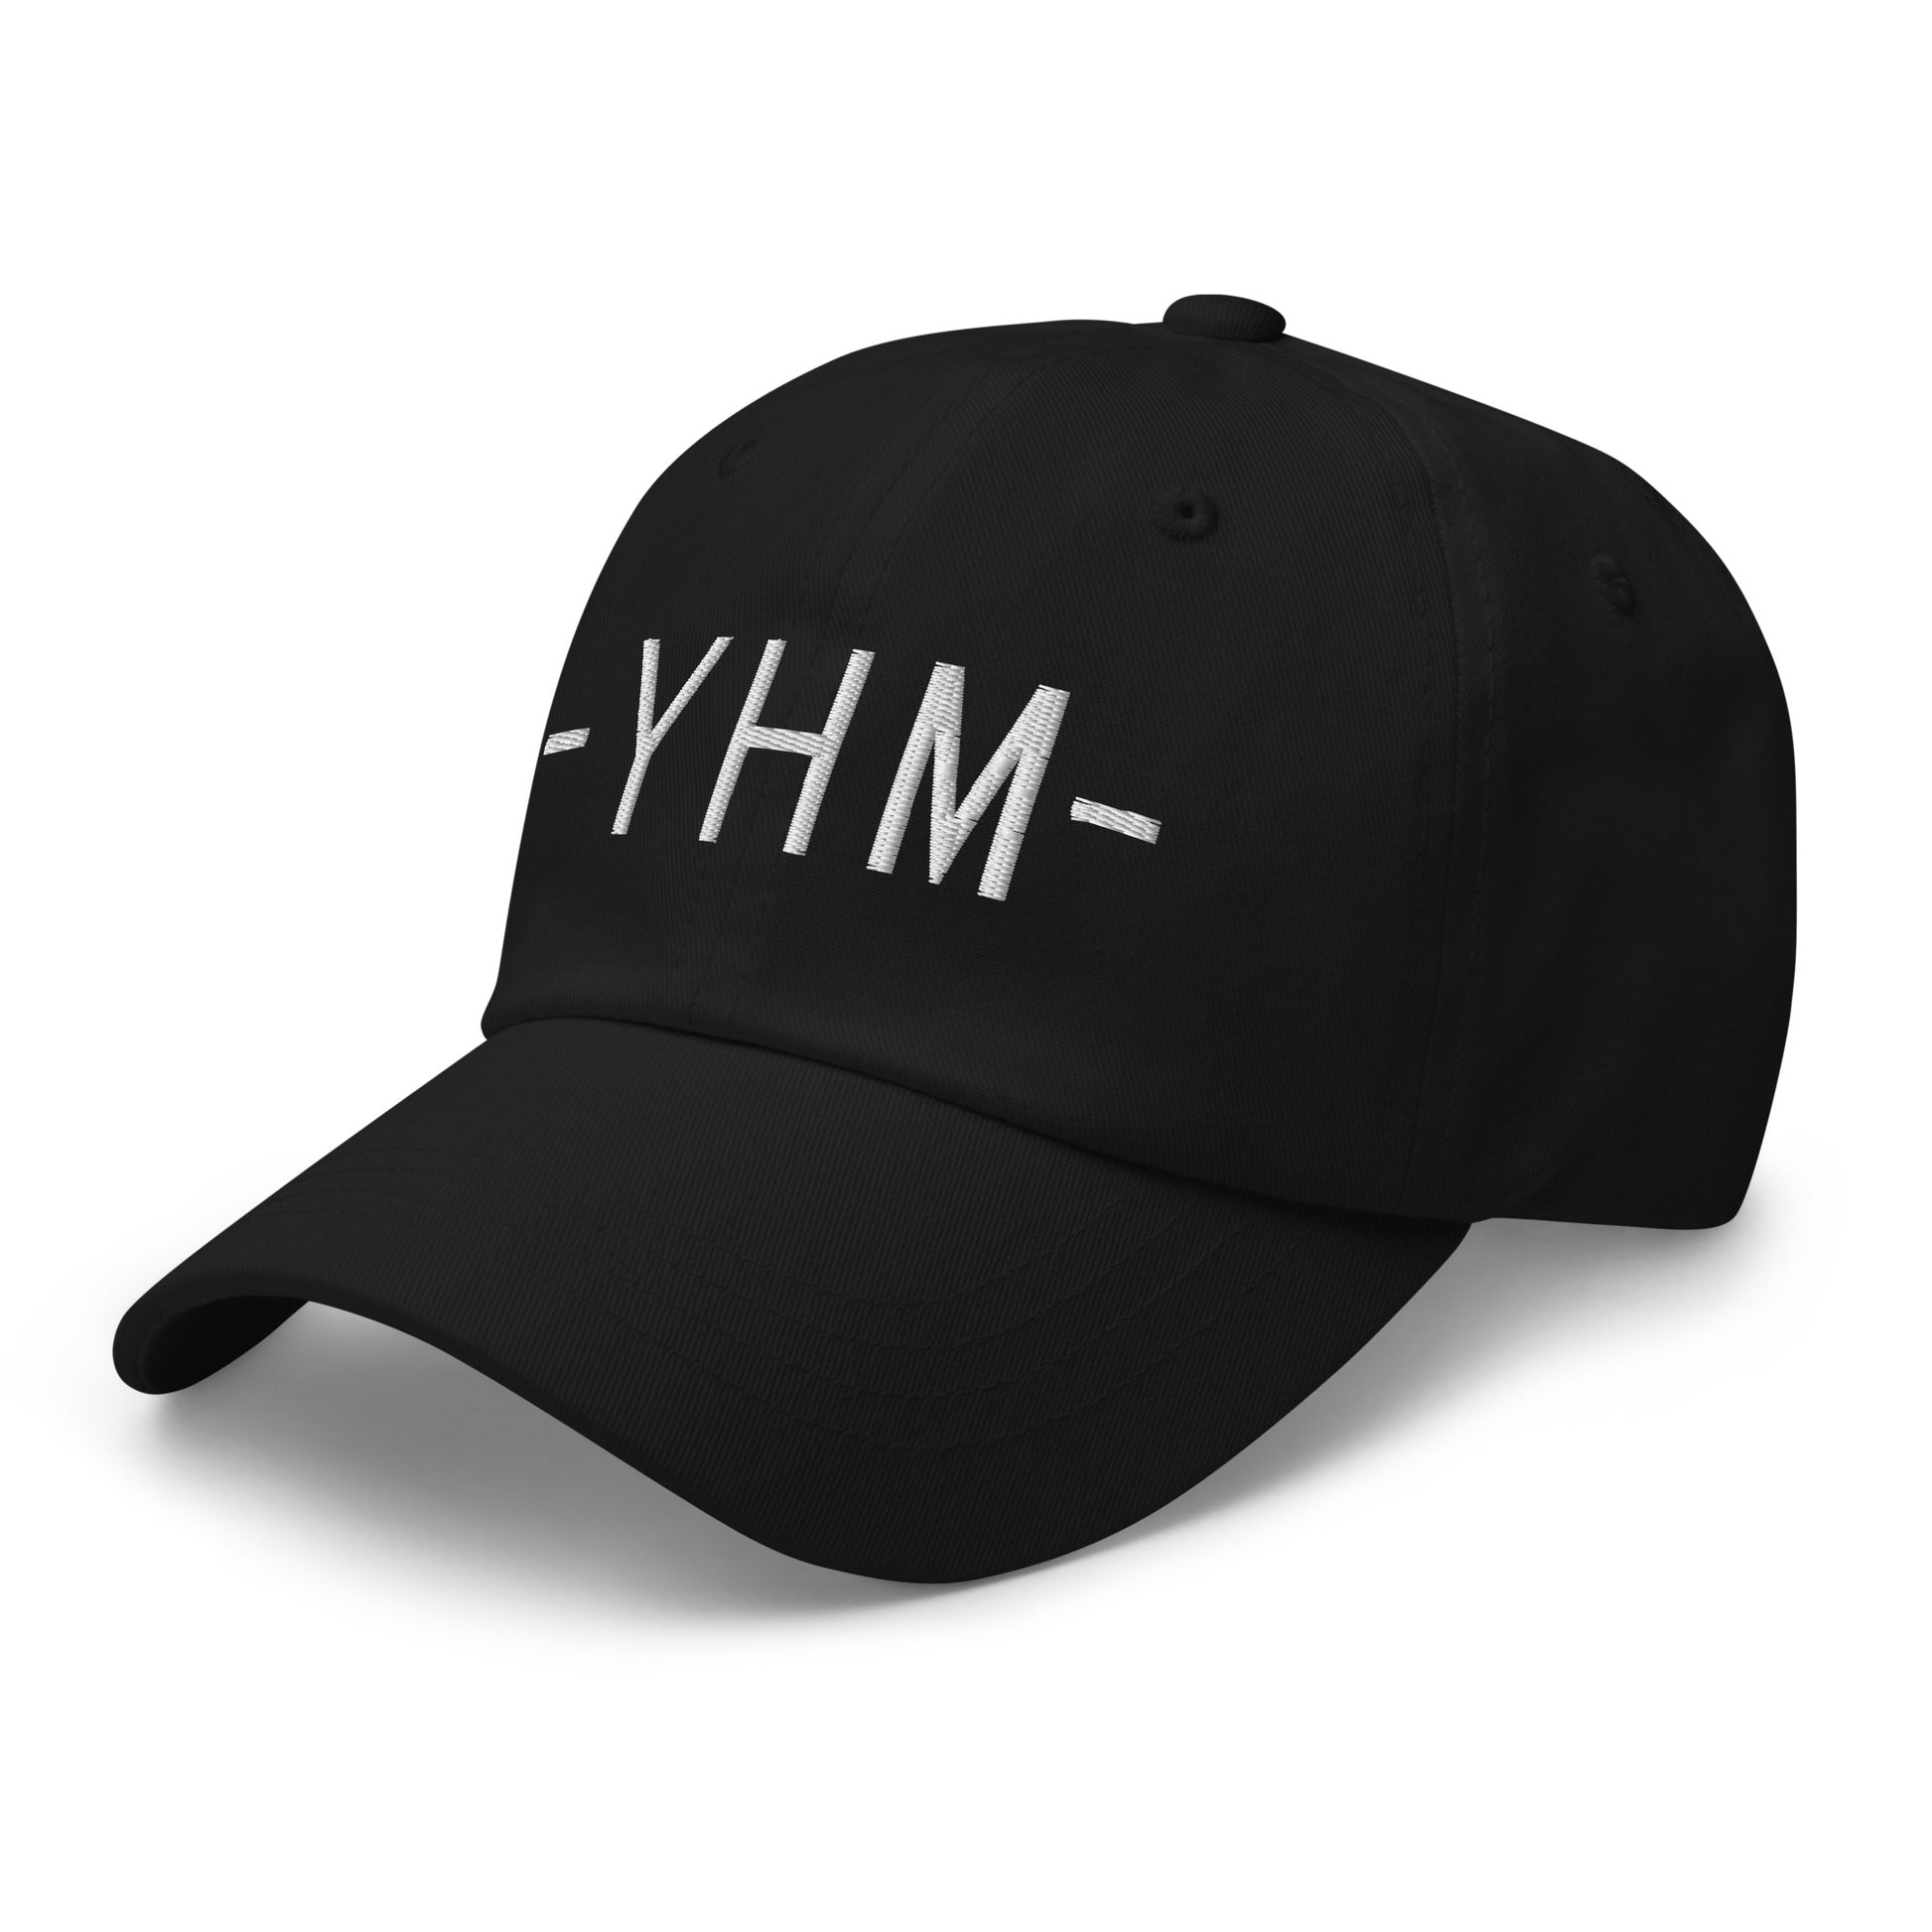 Souvenir Baseball Cap - White • YHM Hamilton • YHM Designs - Image 13